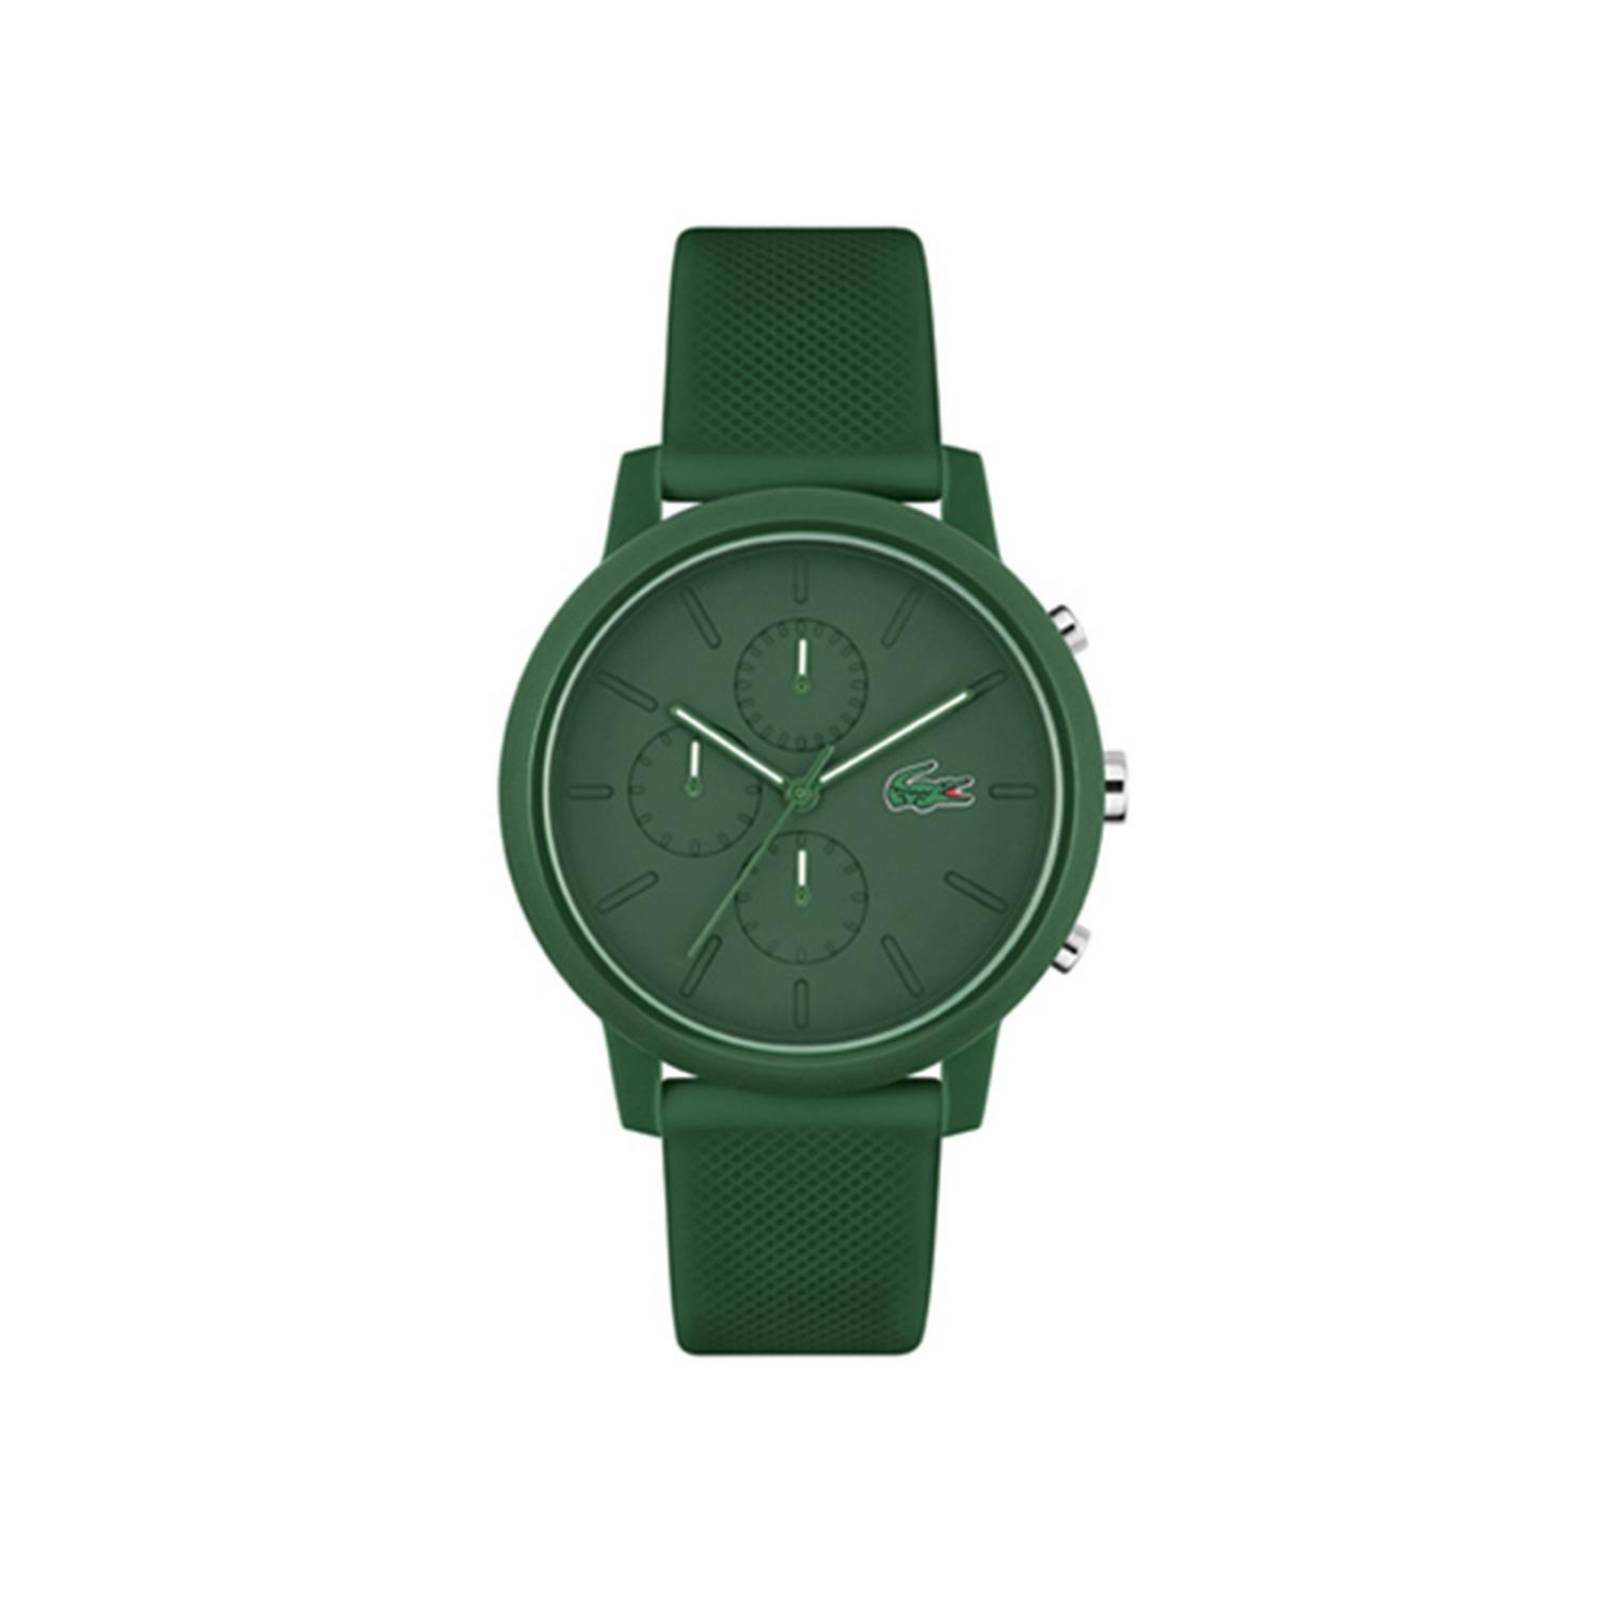 Reloj de hombre Lacoste.12.12 con correa de silicona verde